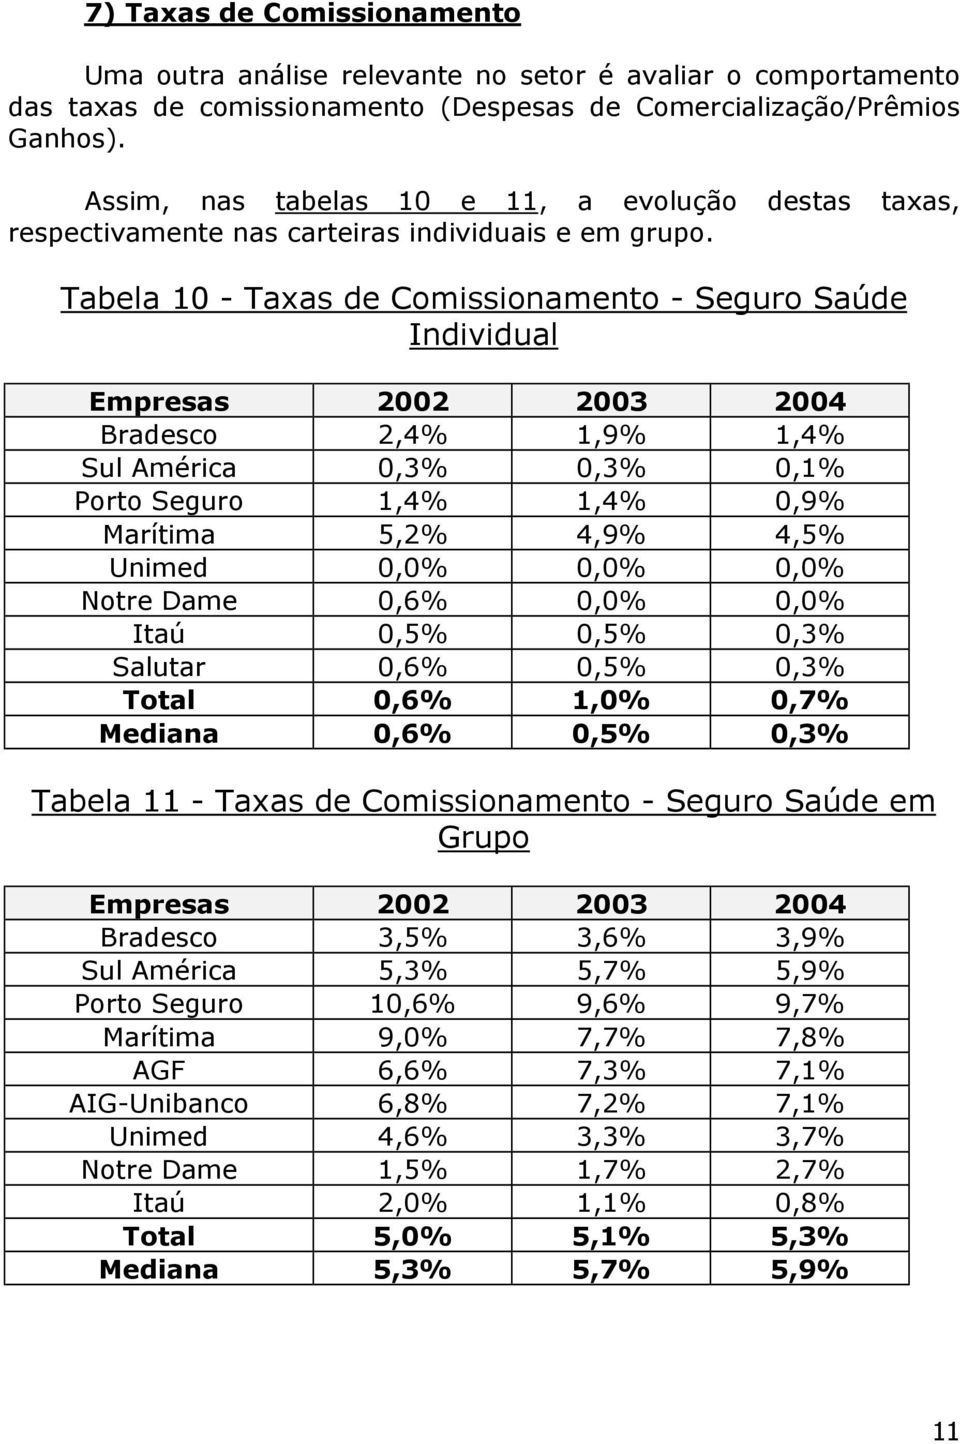 Tabela 10 - Taxas de Comissionamento - Seguro Saúde Individual Empresas 2002 2003 2004 Bradesco 2,4% 1,9% 1,4% Sul América 0,3% 0,3% 0,1% Porto Seguro 1,4% 1,4% 0,9% Marítima 5,2% 4,9% 4,5% Unimed